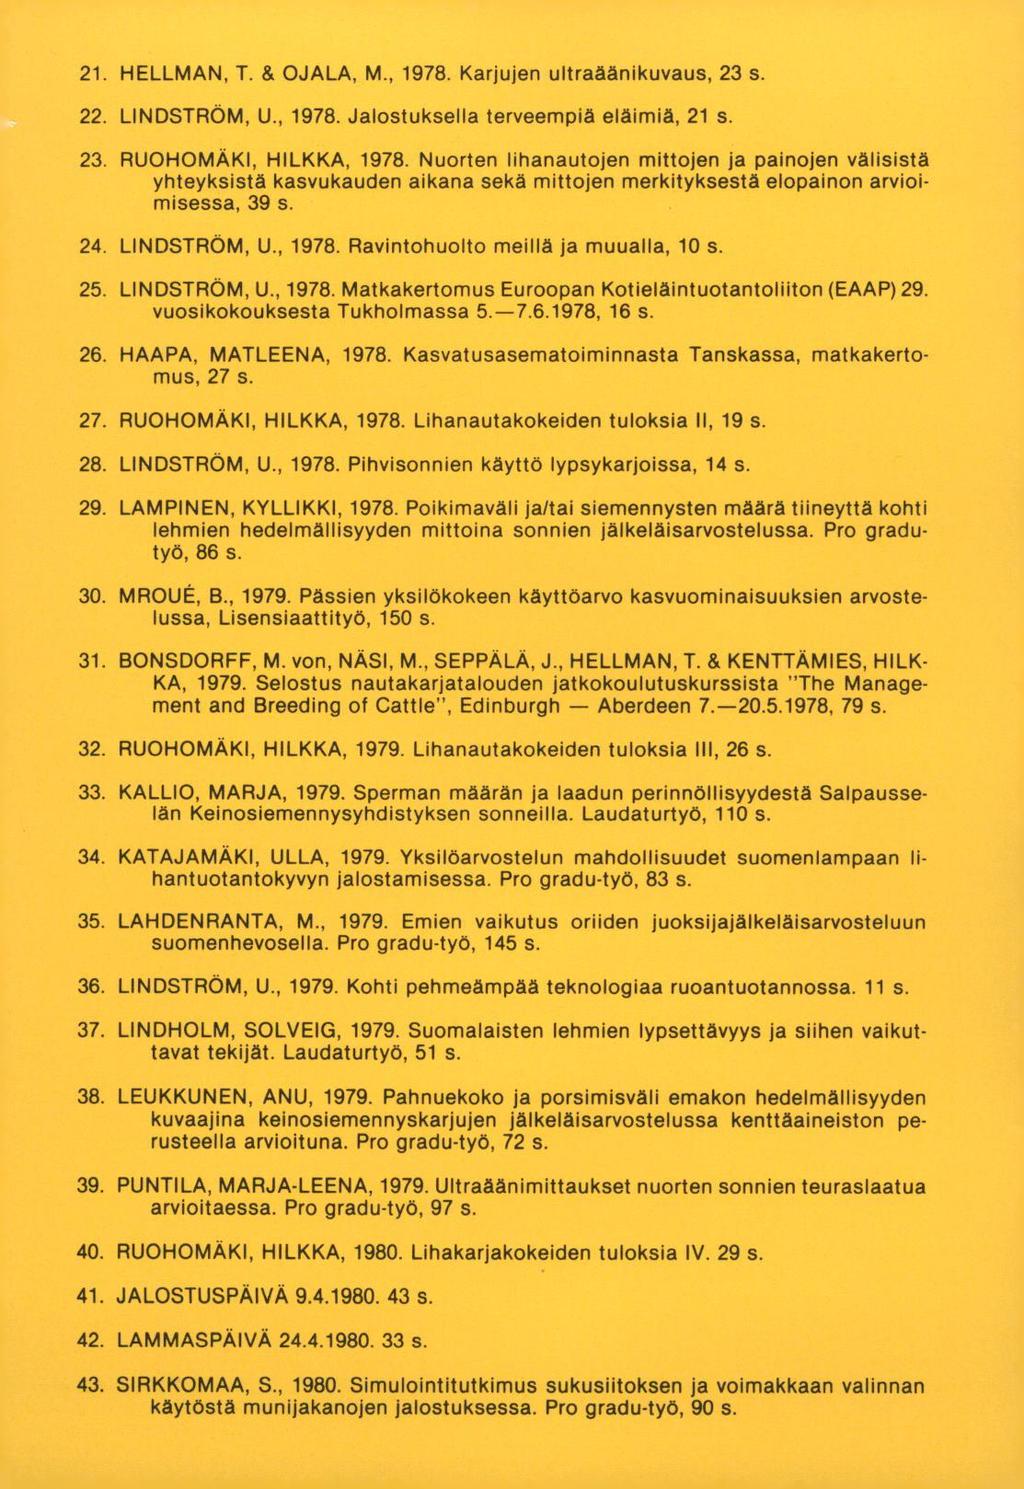 HELLMAN, T. & OJALA, M., 1978. Karjujen ultraäänikuvaus, 23 s. LINDSTRÖM, U., 1978. Jalostuksella terveempiä eläimiä, 21 s. RUOHOMAKI, HILKKA, 1978.